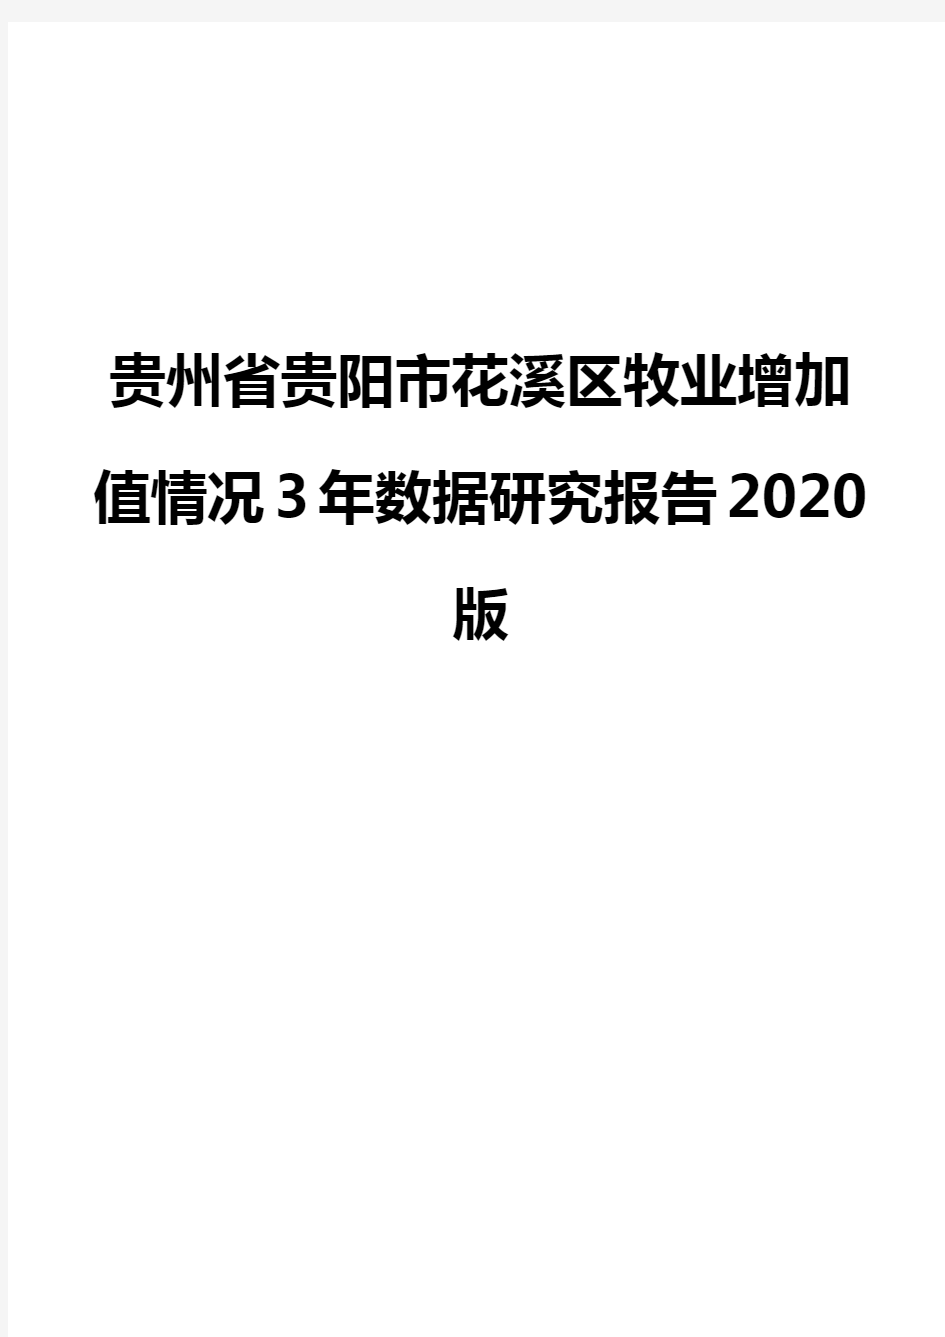 贵州省贵阳市花溪区牧业增加值情况3年数据研究报告2020版